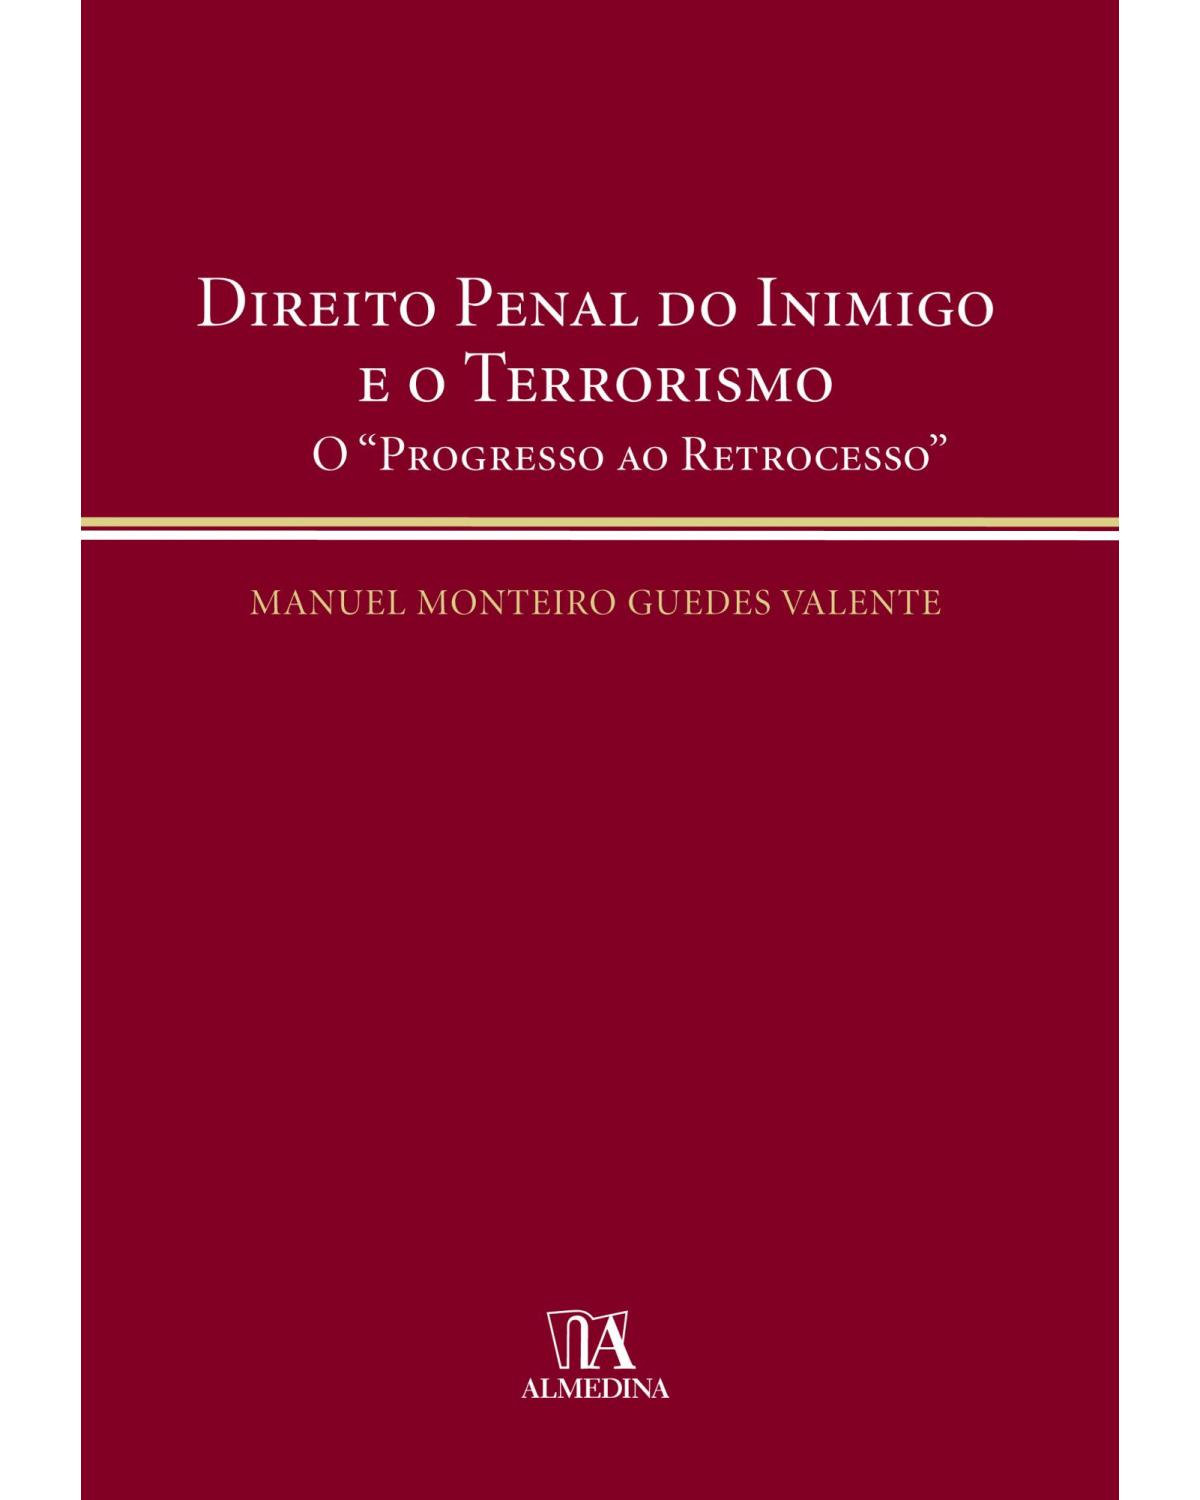 Direito penal do inimigo e o terrorismo - o progresso ao retrocesso - 1ª Edição | 2010